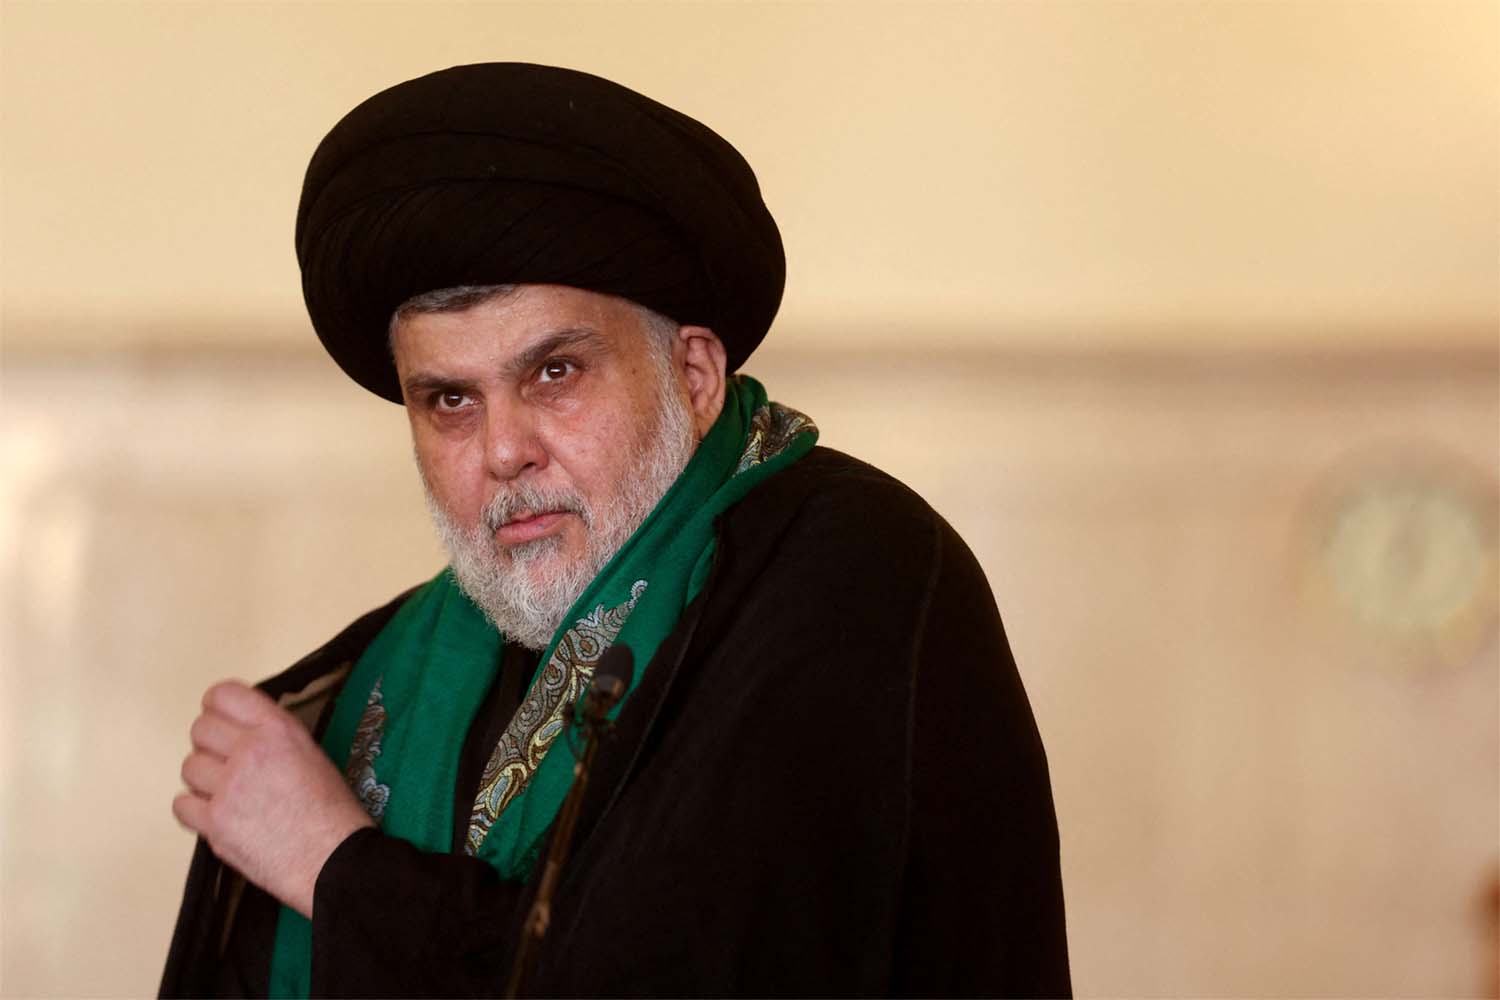 Stepping aside could weaken Sadr's popular base